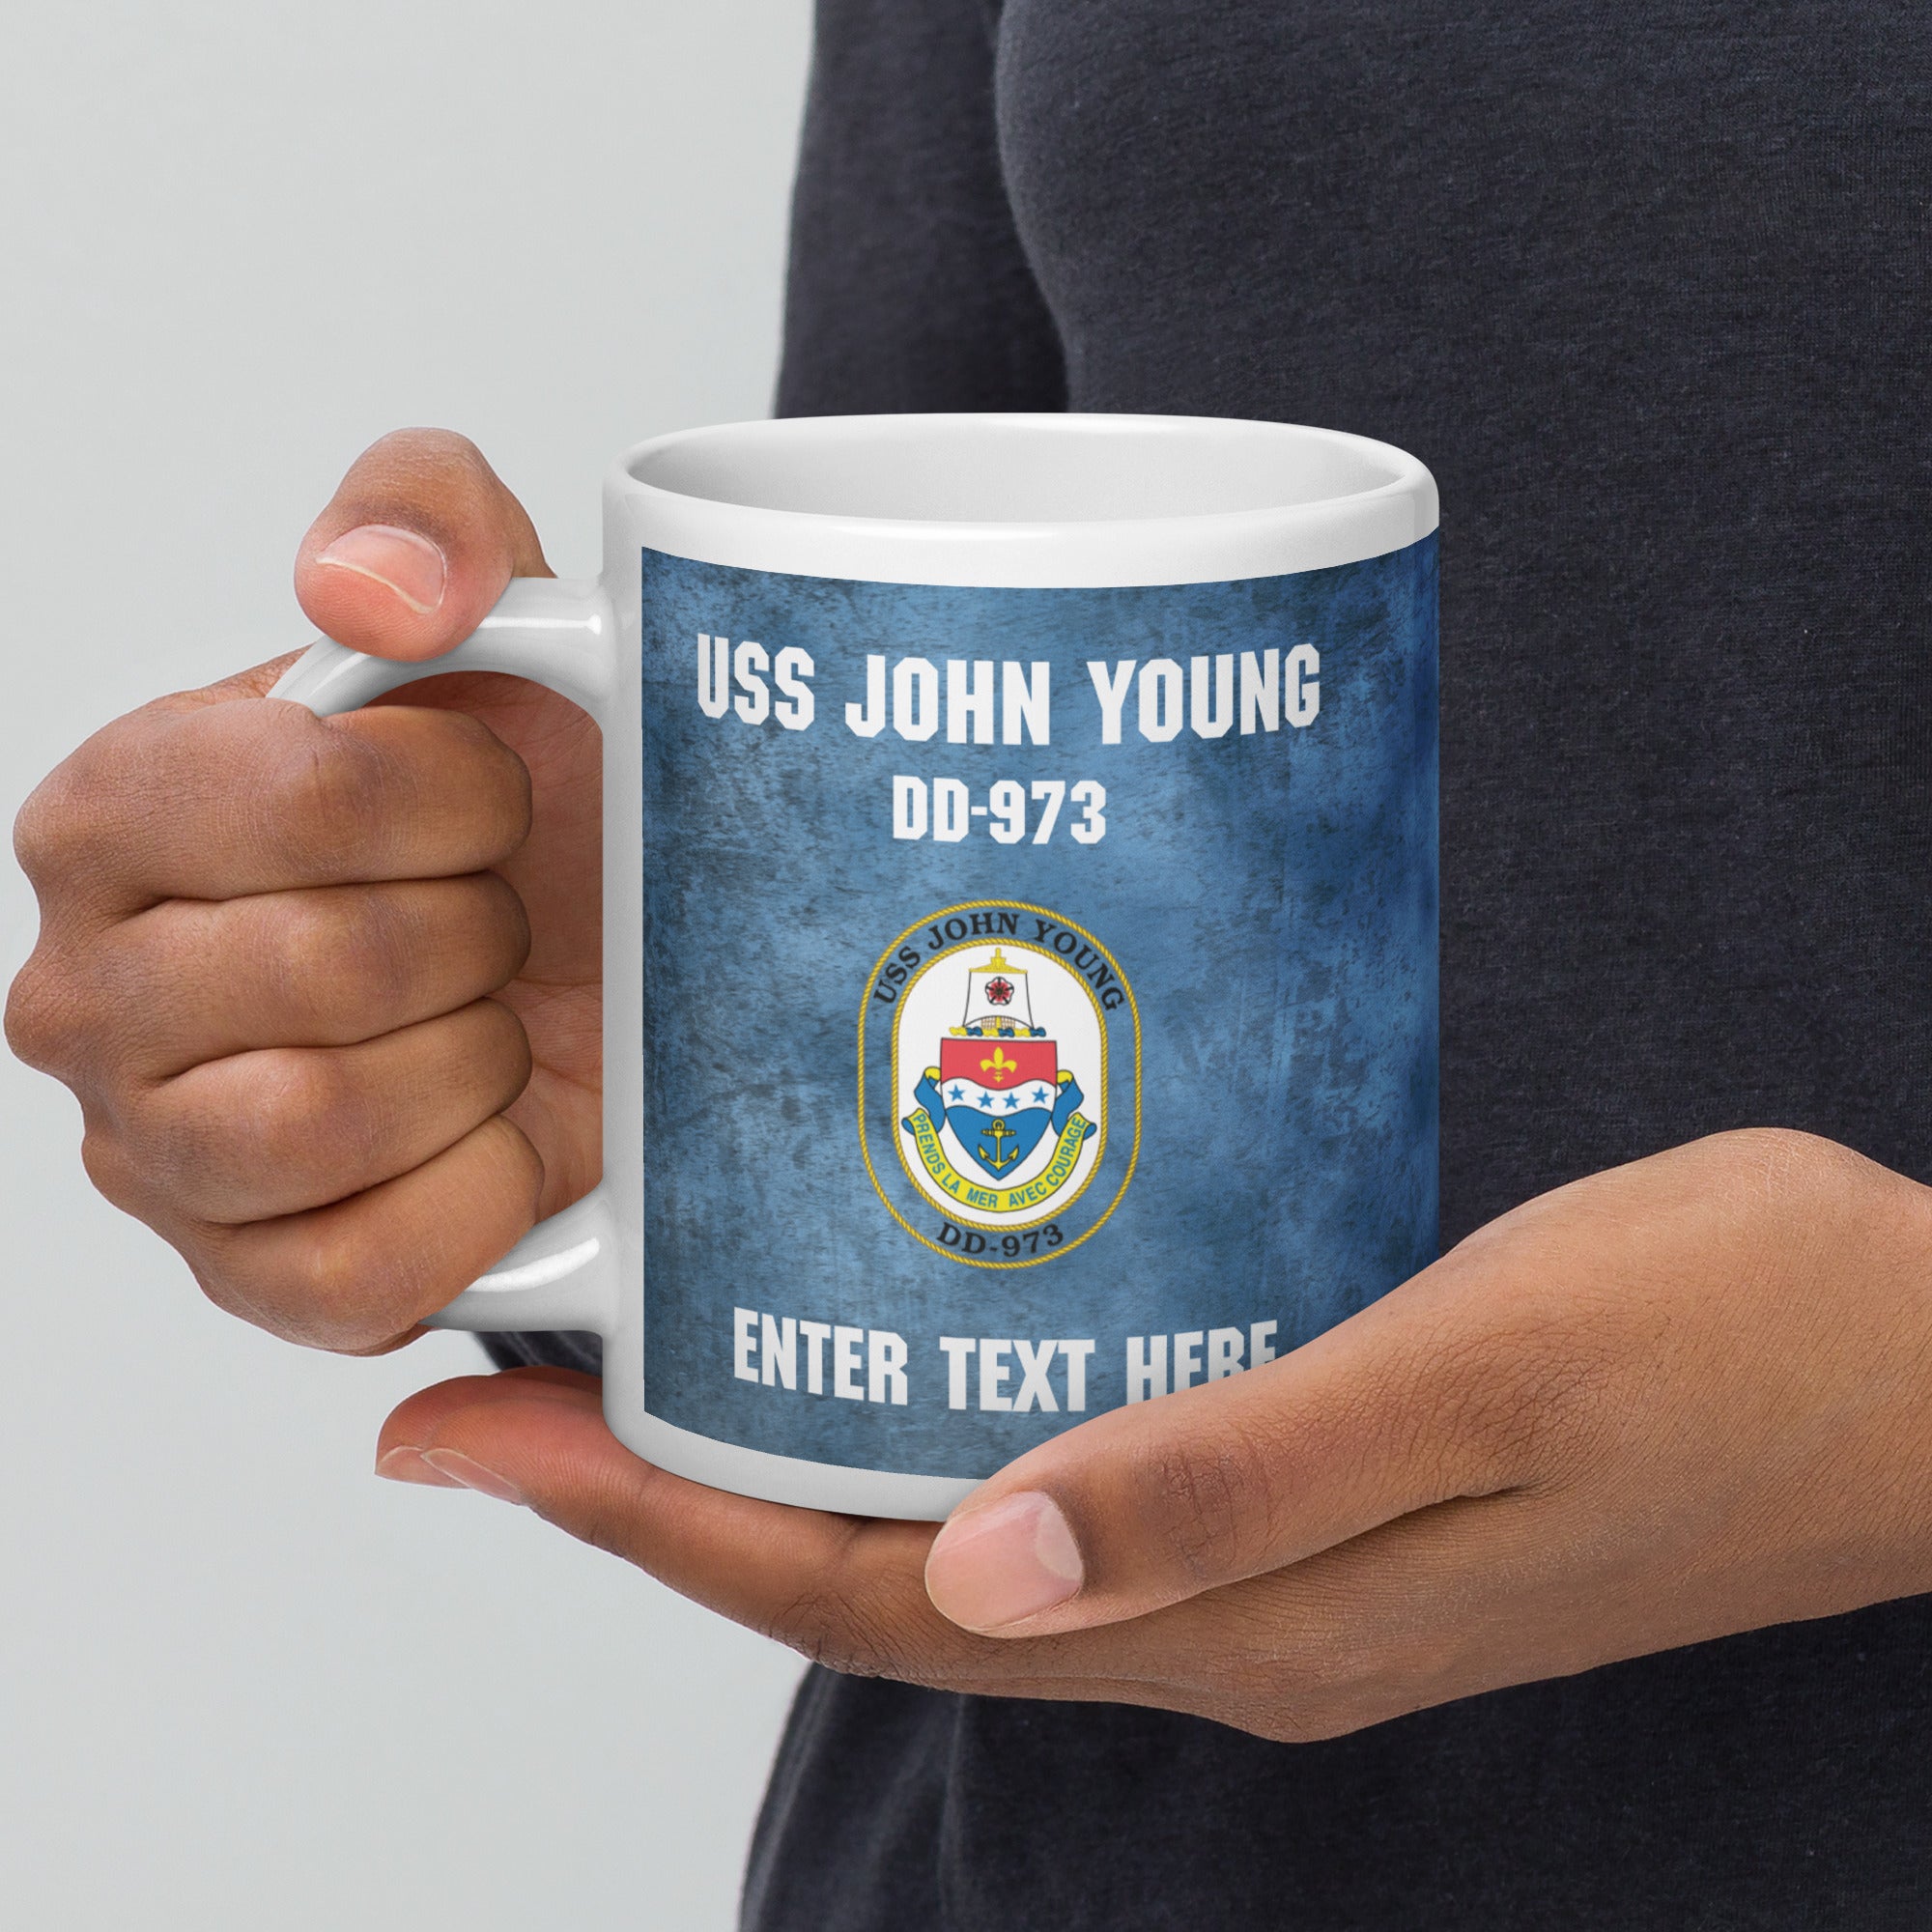 Customizable USS JOHN YOUNG White glossy mug